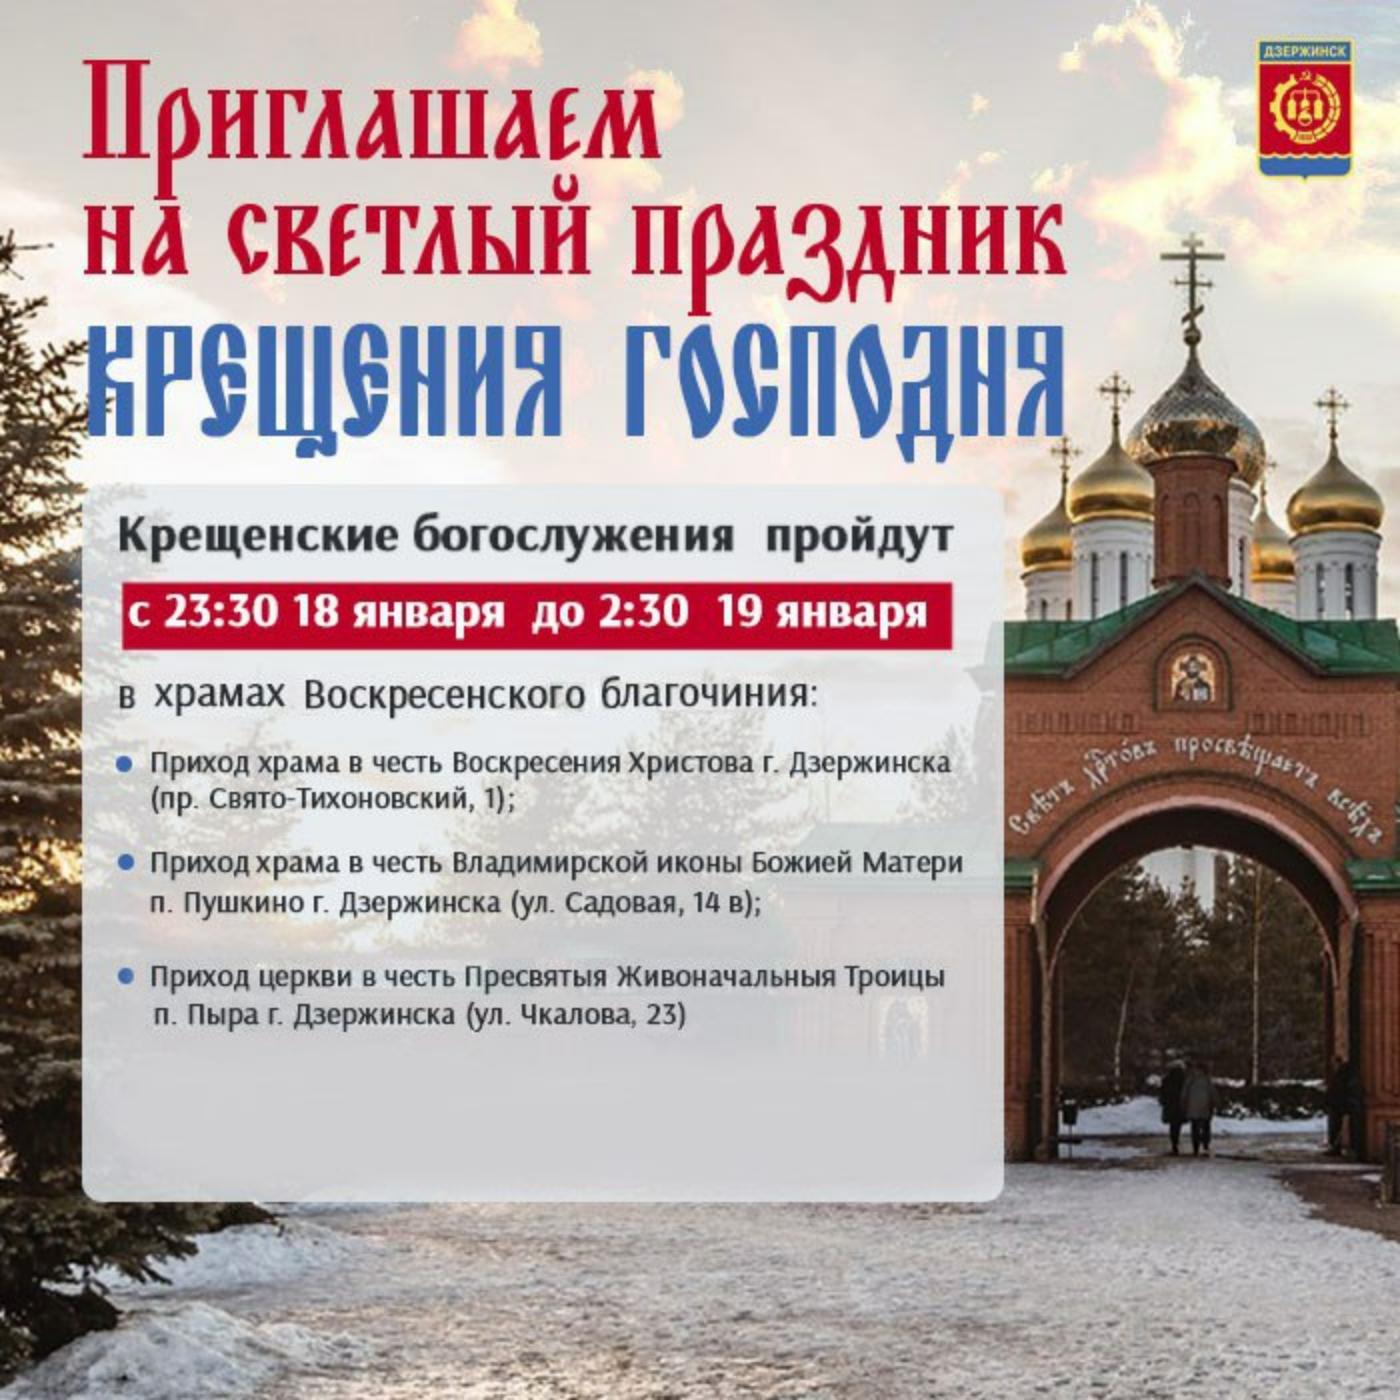 Крещенские богослужения пройдут в трех храмах Дзержинска